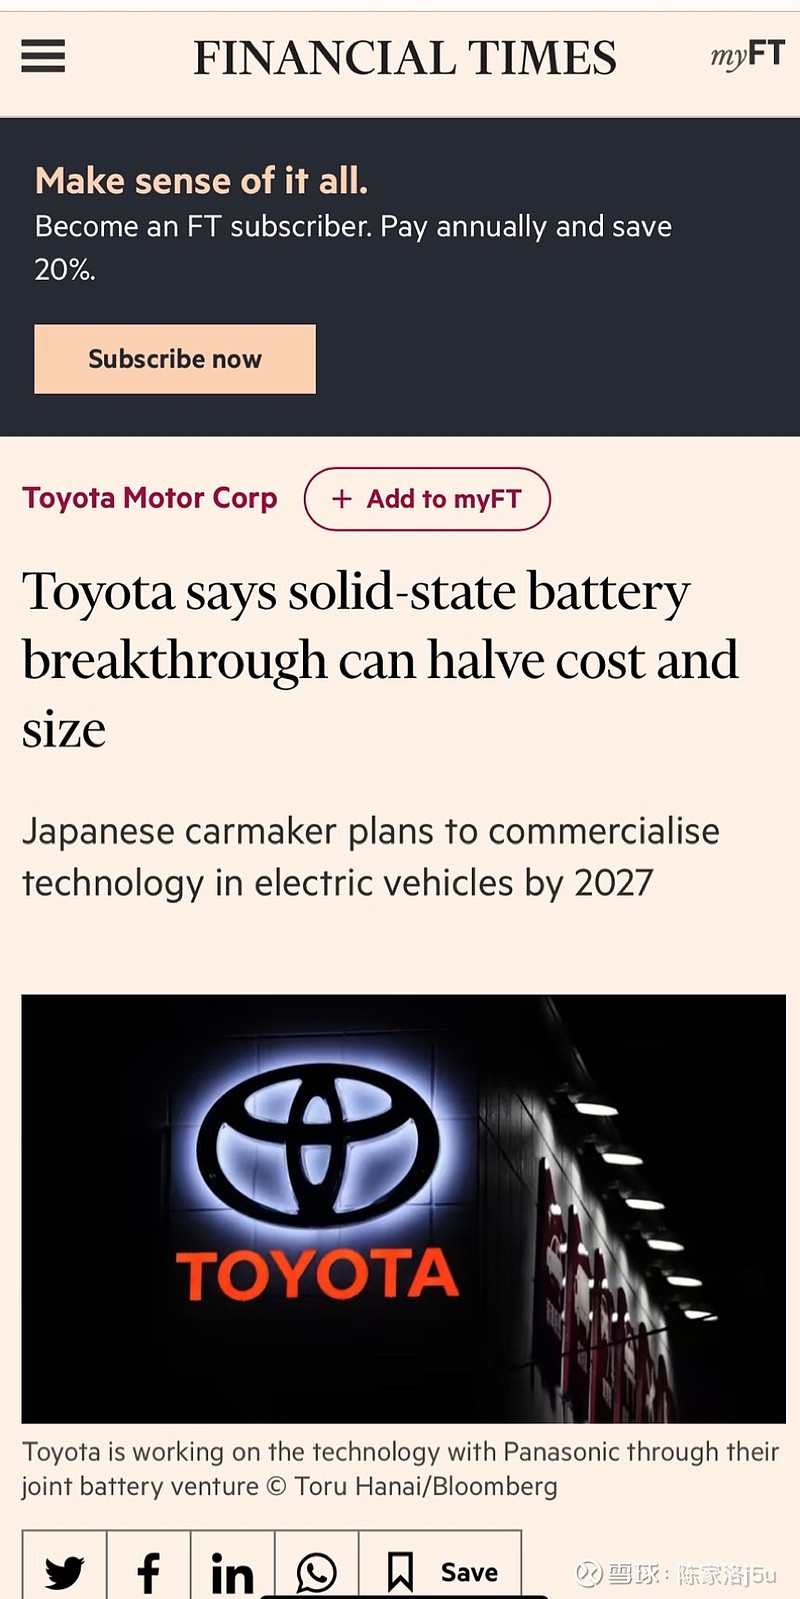 丰田公司声称其研究的固态电池取